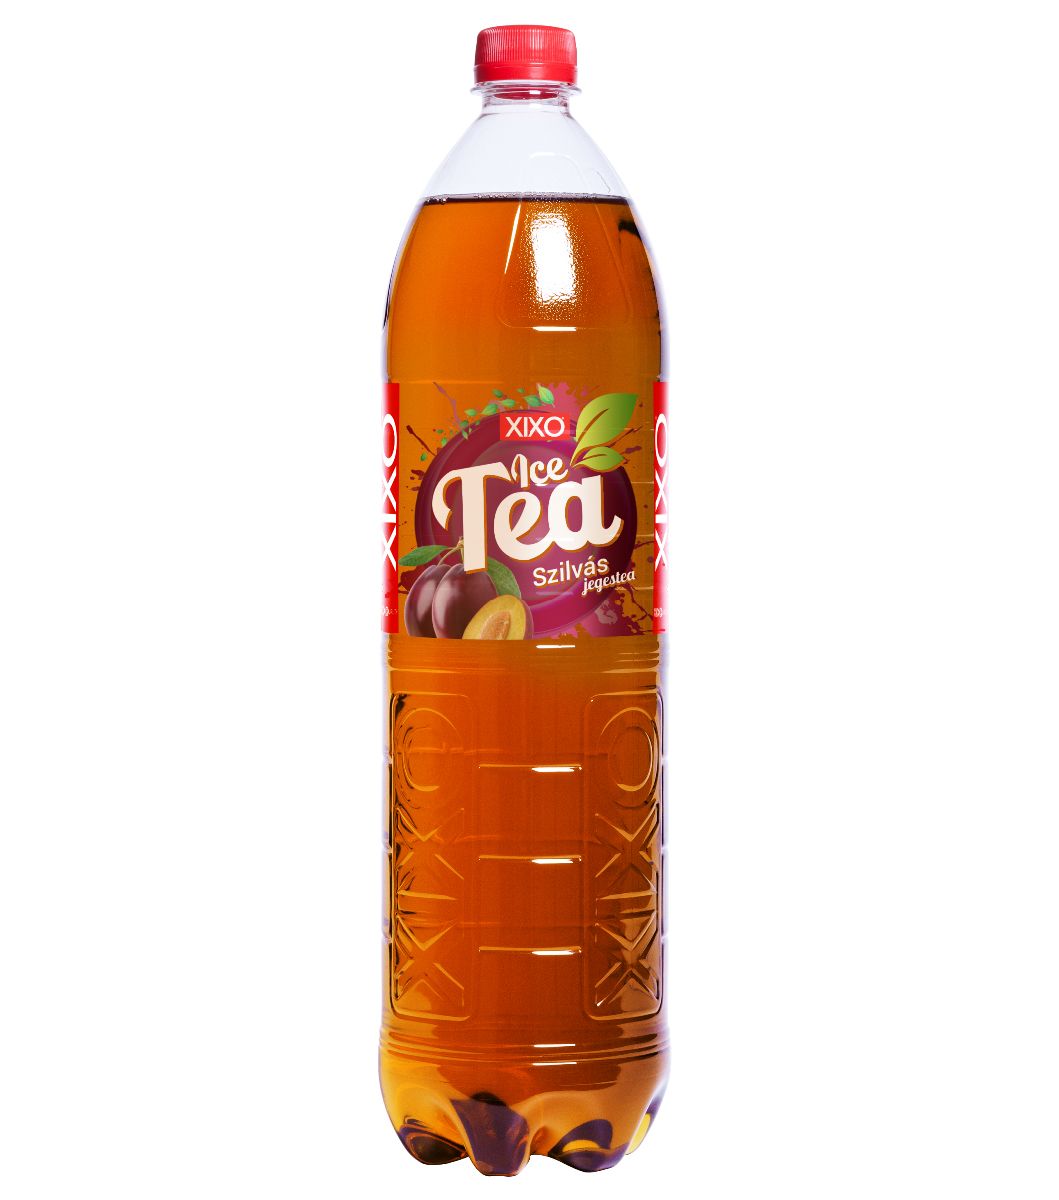 XIXO ICE TEA SZILVA 1,5L